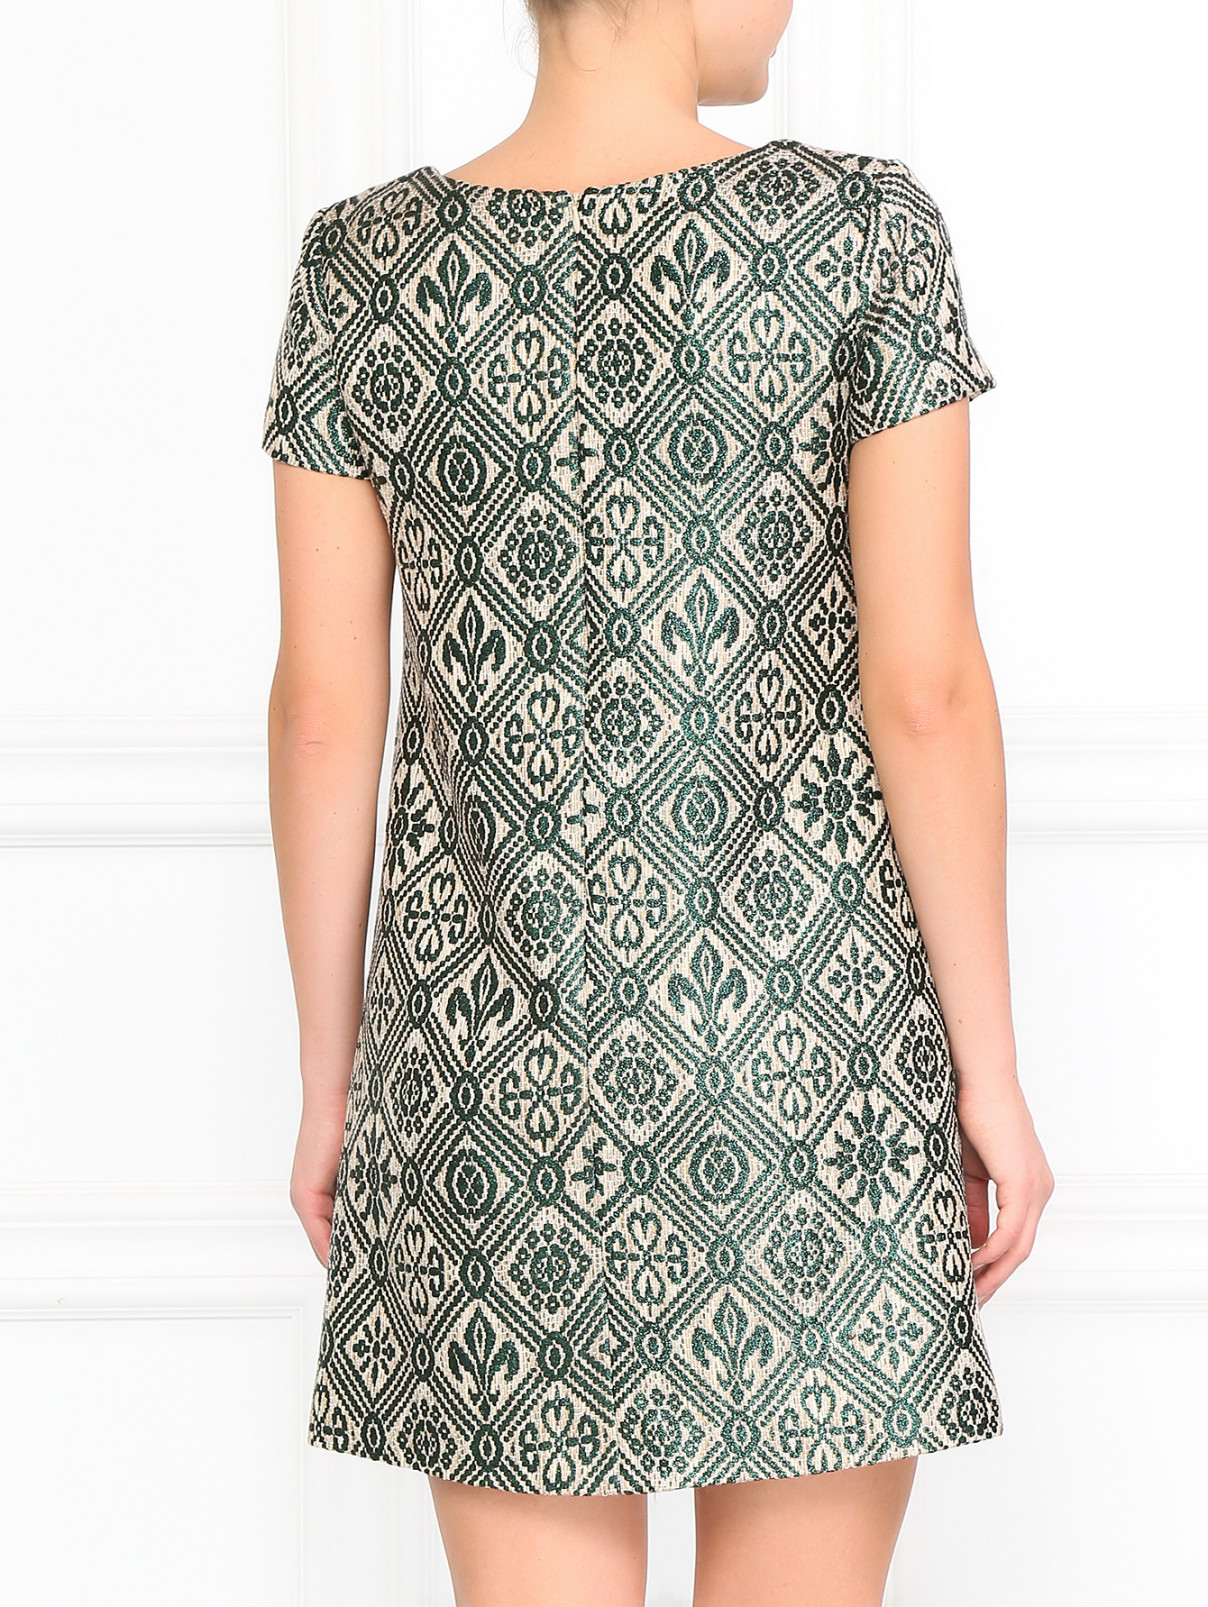 Мини-платье с принтом Vanda Catucci  –  Модель Верх-Низ1  – Цвет:  Зеленый